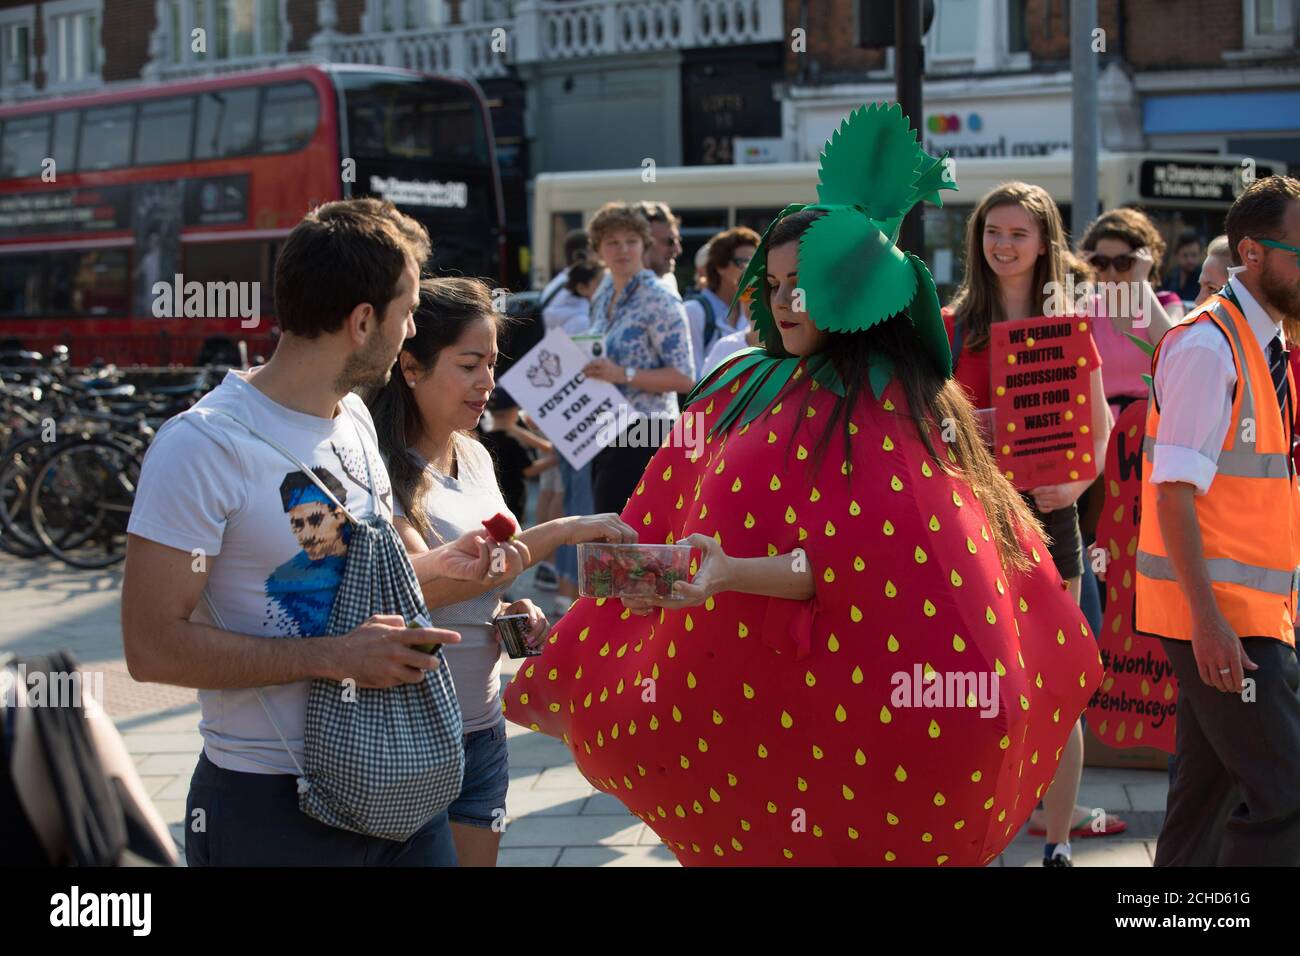 Un militant portant un costume de fraise wonky rejoint la file d'attente aux championnats de Wimbledon alors qu'Oddbox, le plus grand projet de boîte de fruits et légumes wonky du Royaume-Uni, fait prendre conscience du gaspillage au sein de l'industrie britannique des fraises, Londres. Banque D'Images